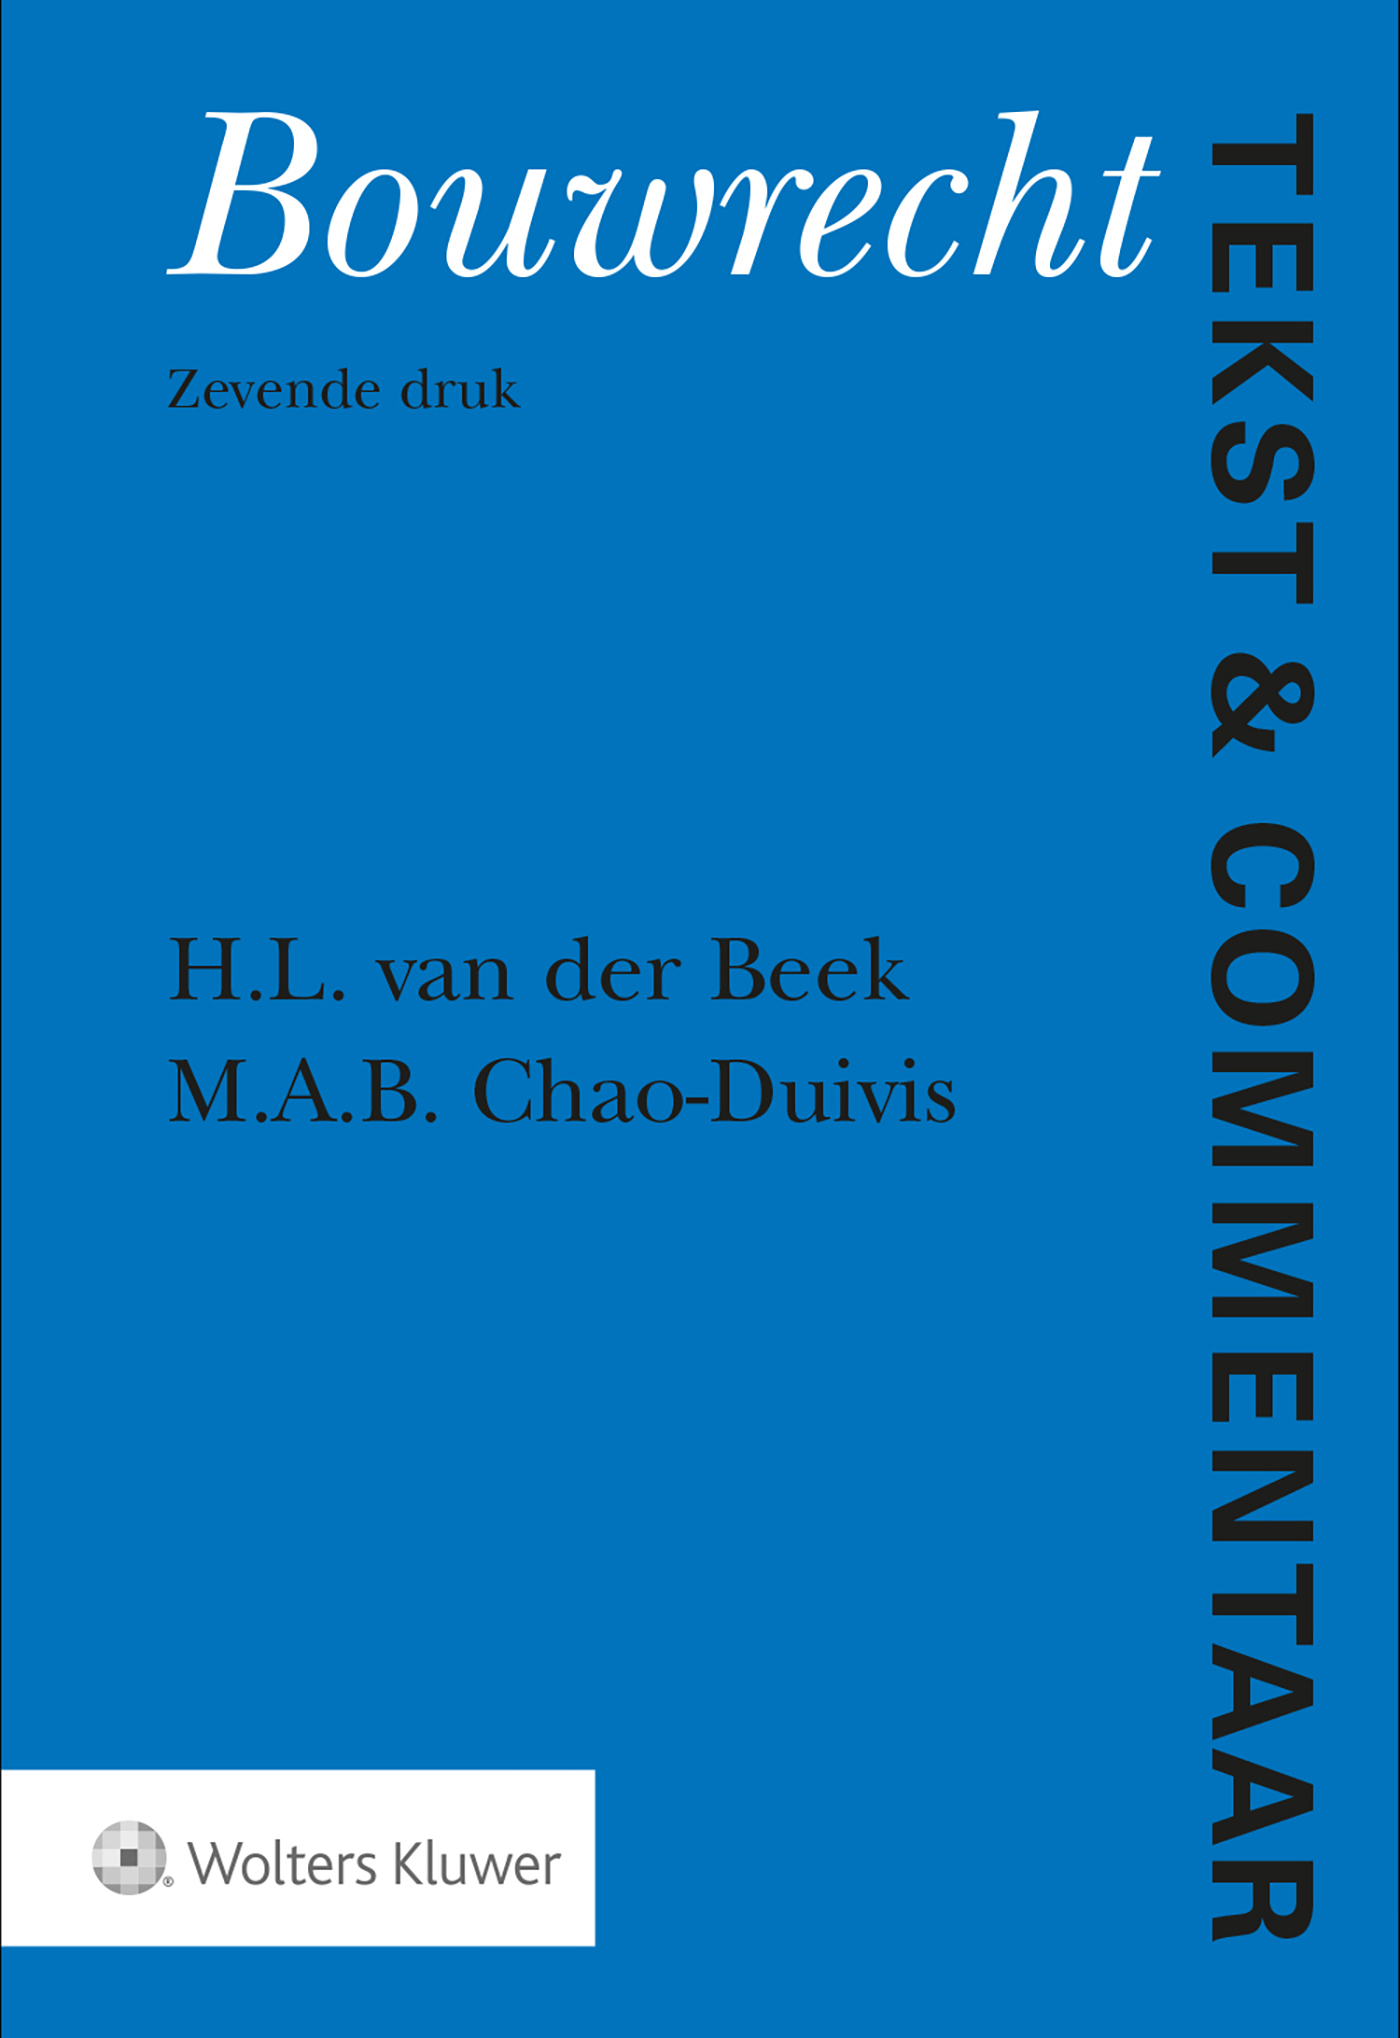 Bouwrecht (Ebook)